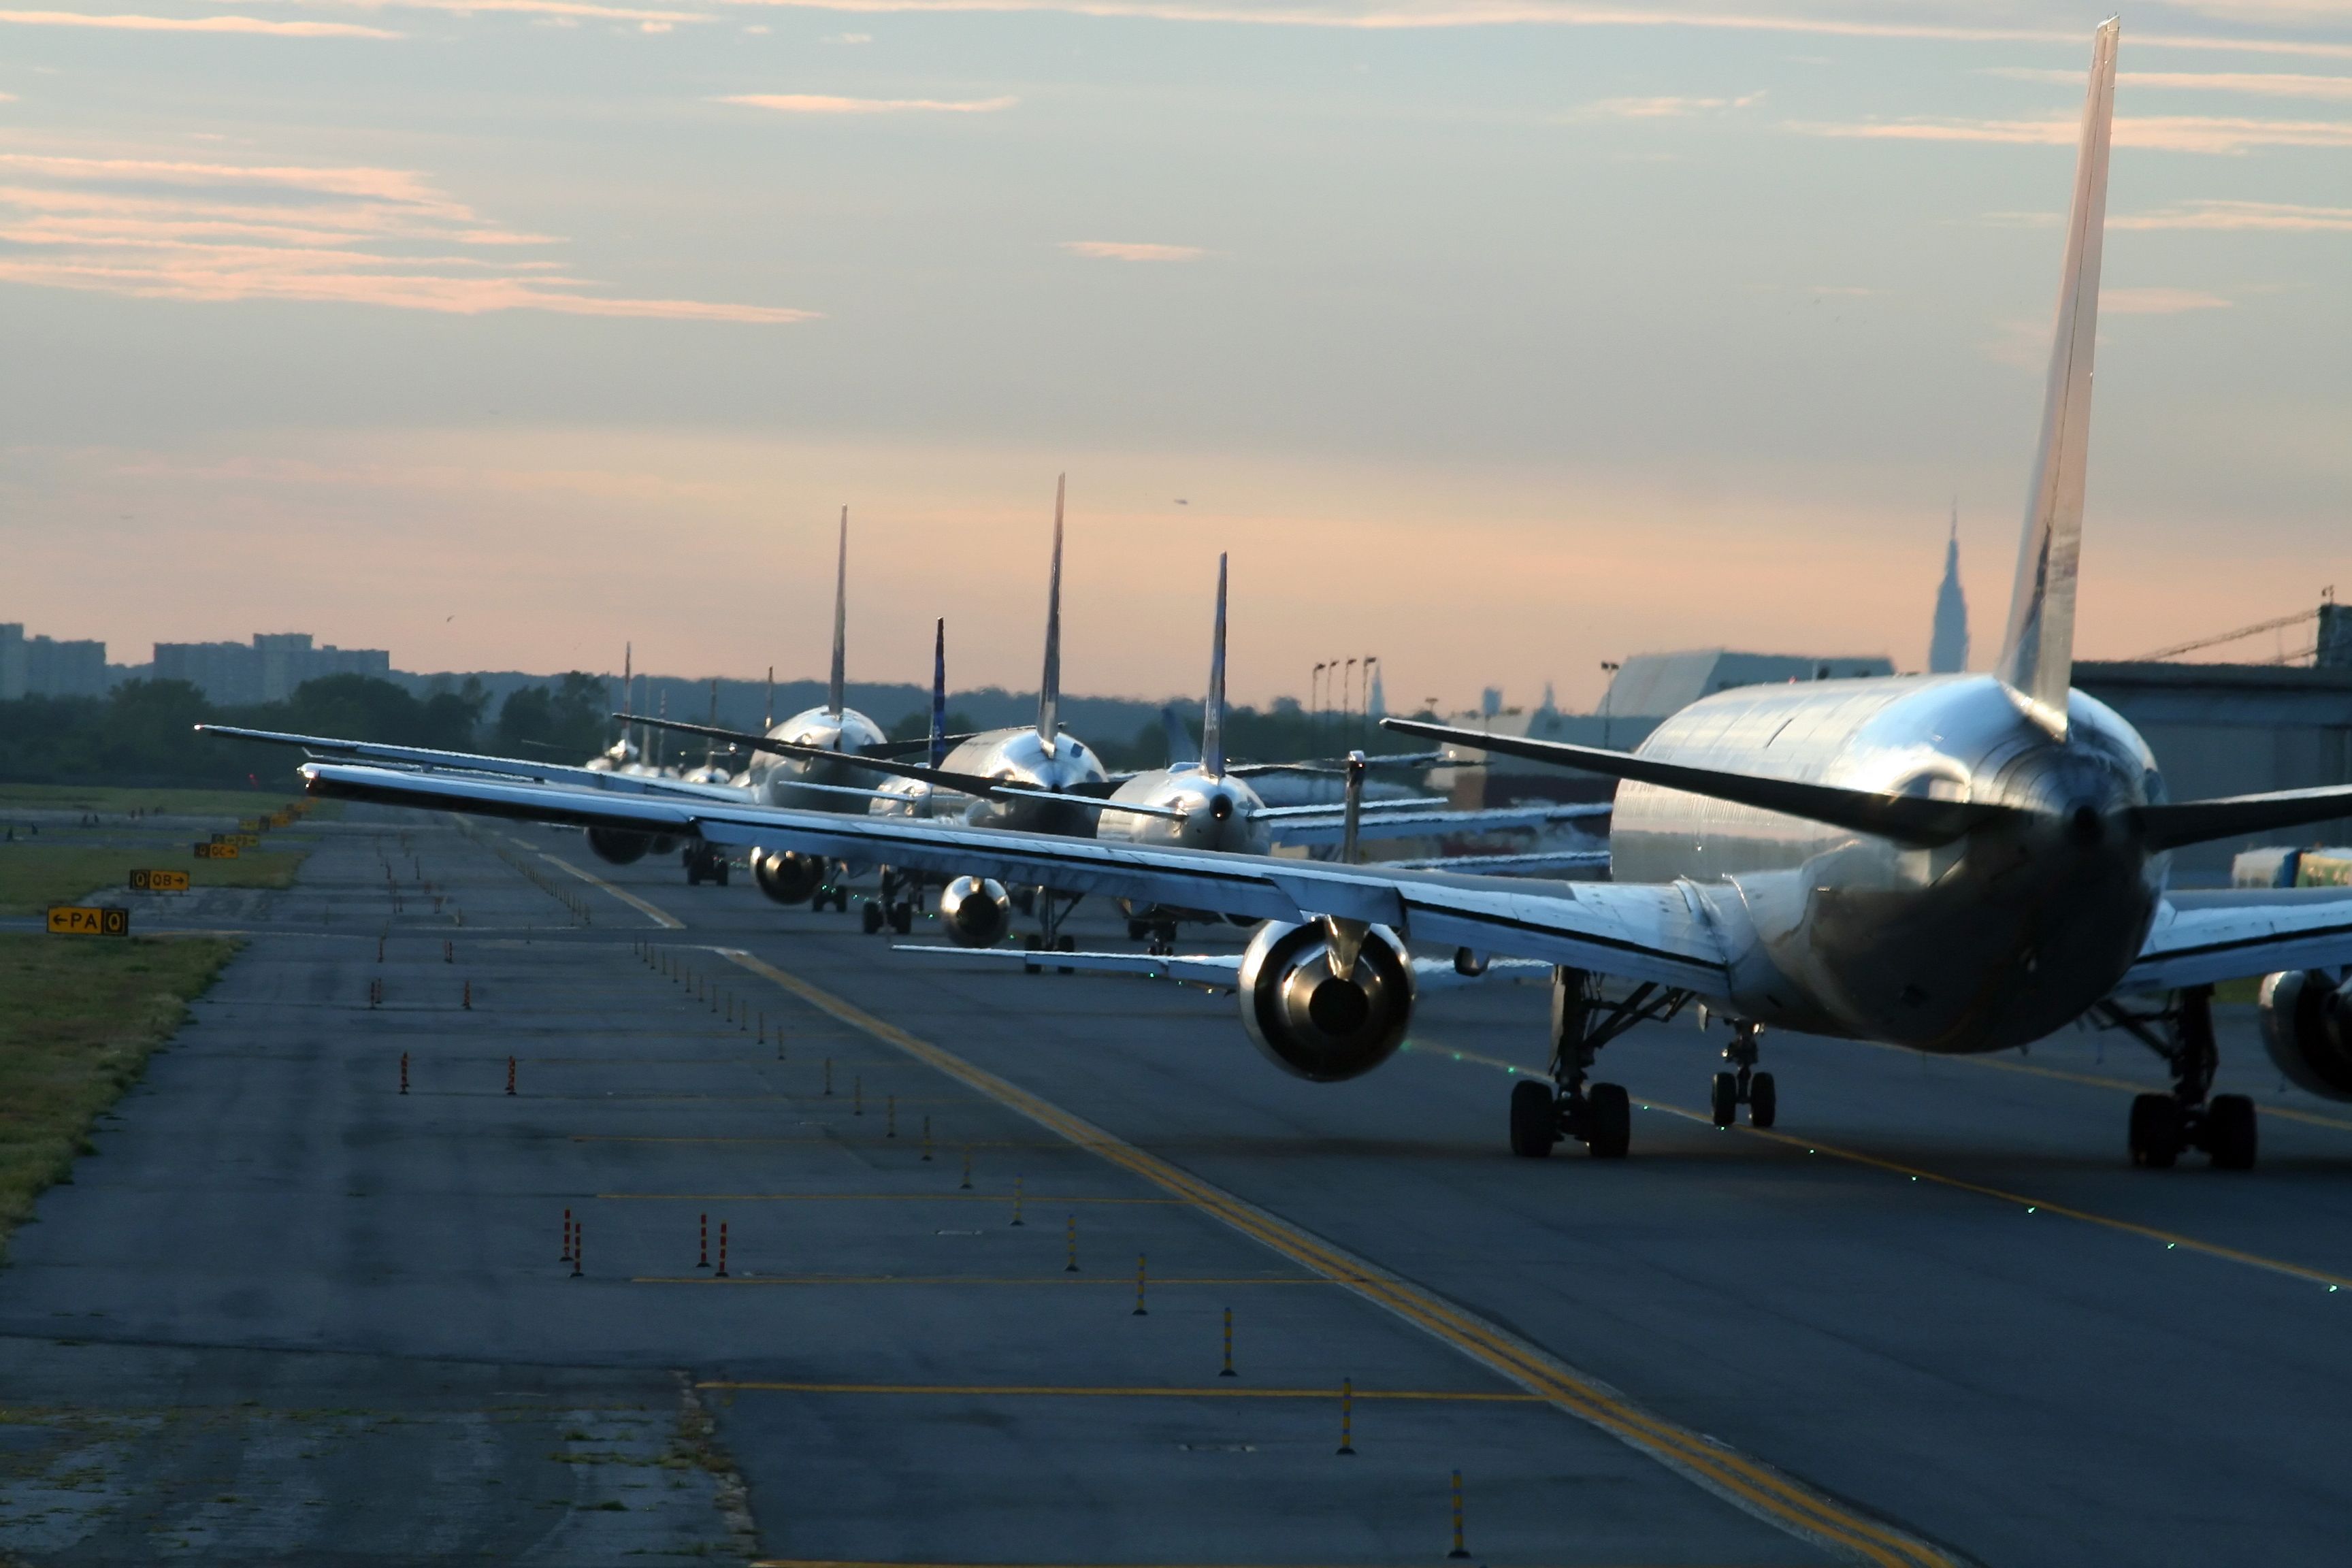 Aircraft lined up at New York JFK Airport